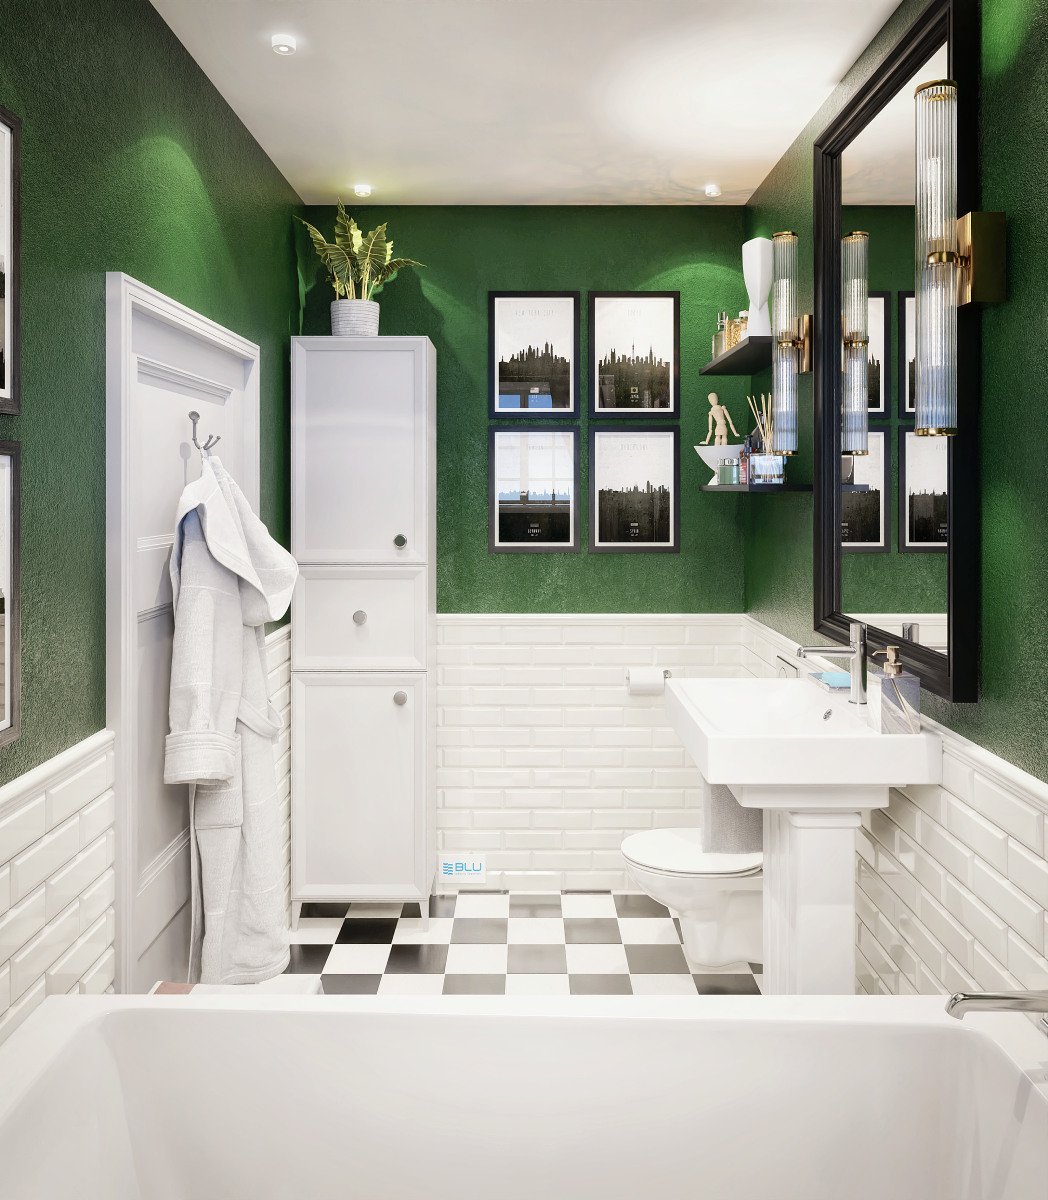 Biało zielona łazienka w stylu vintage.